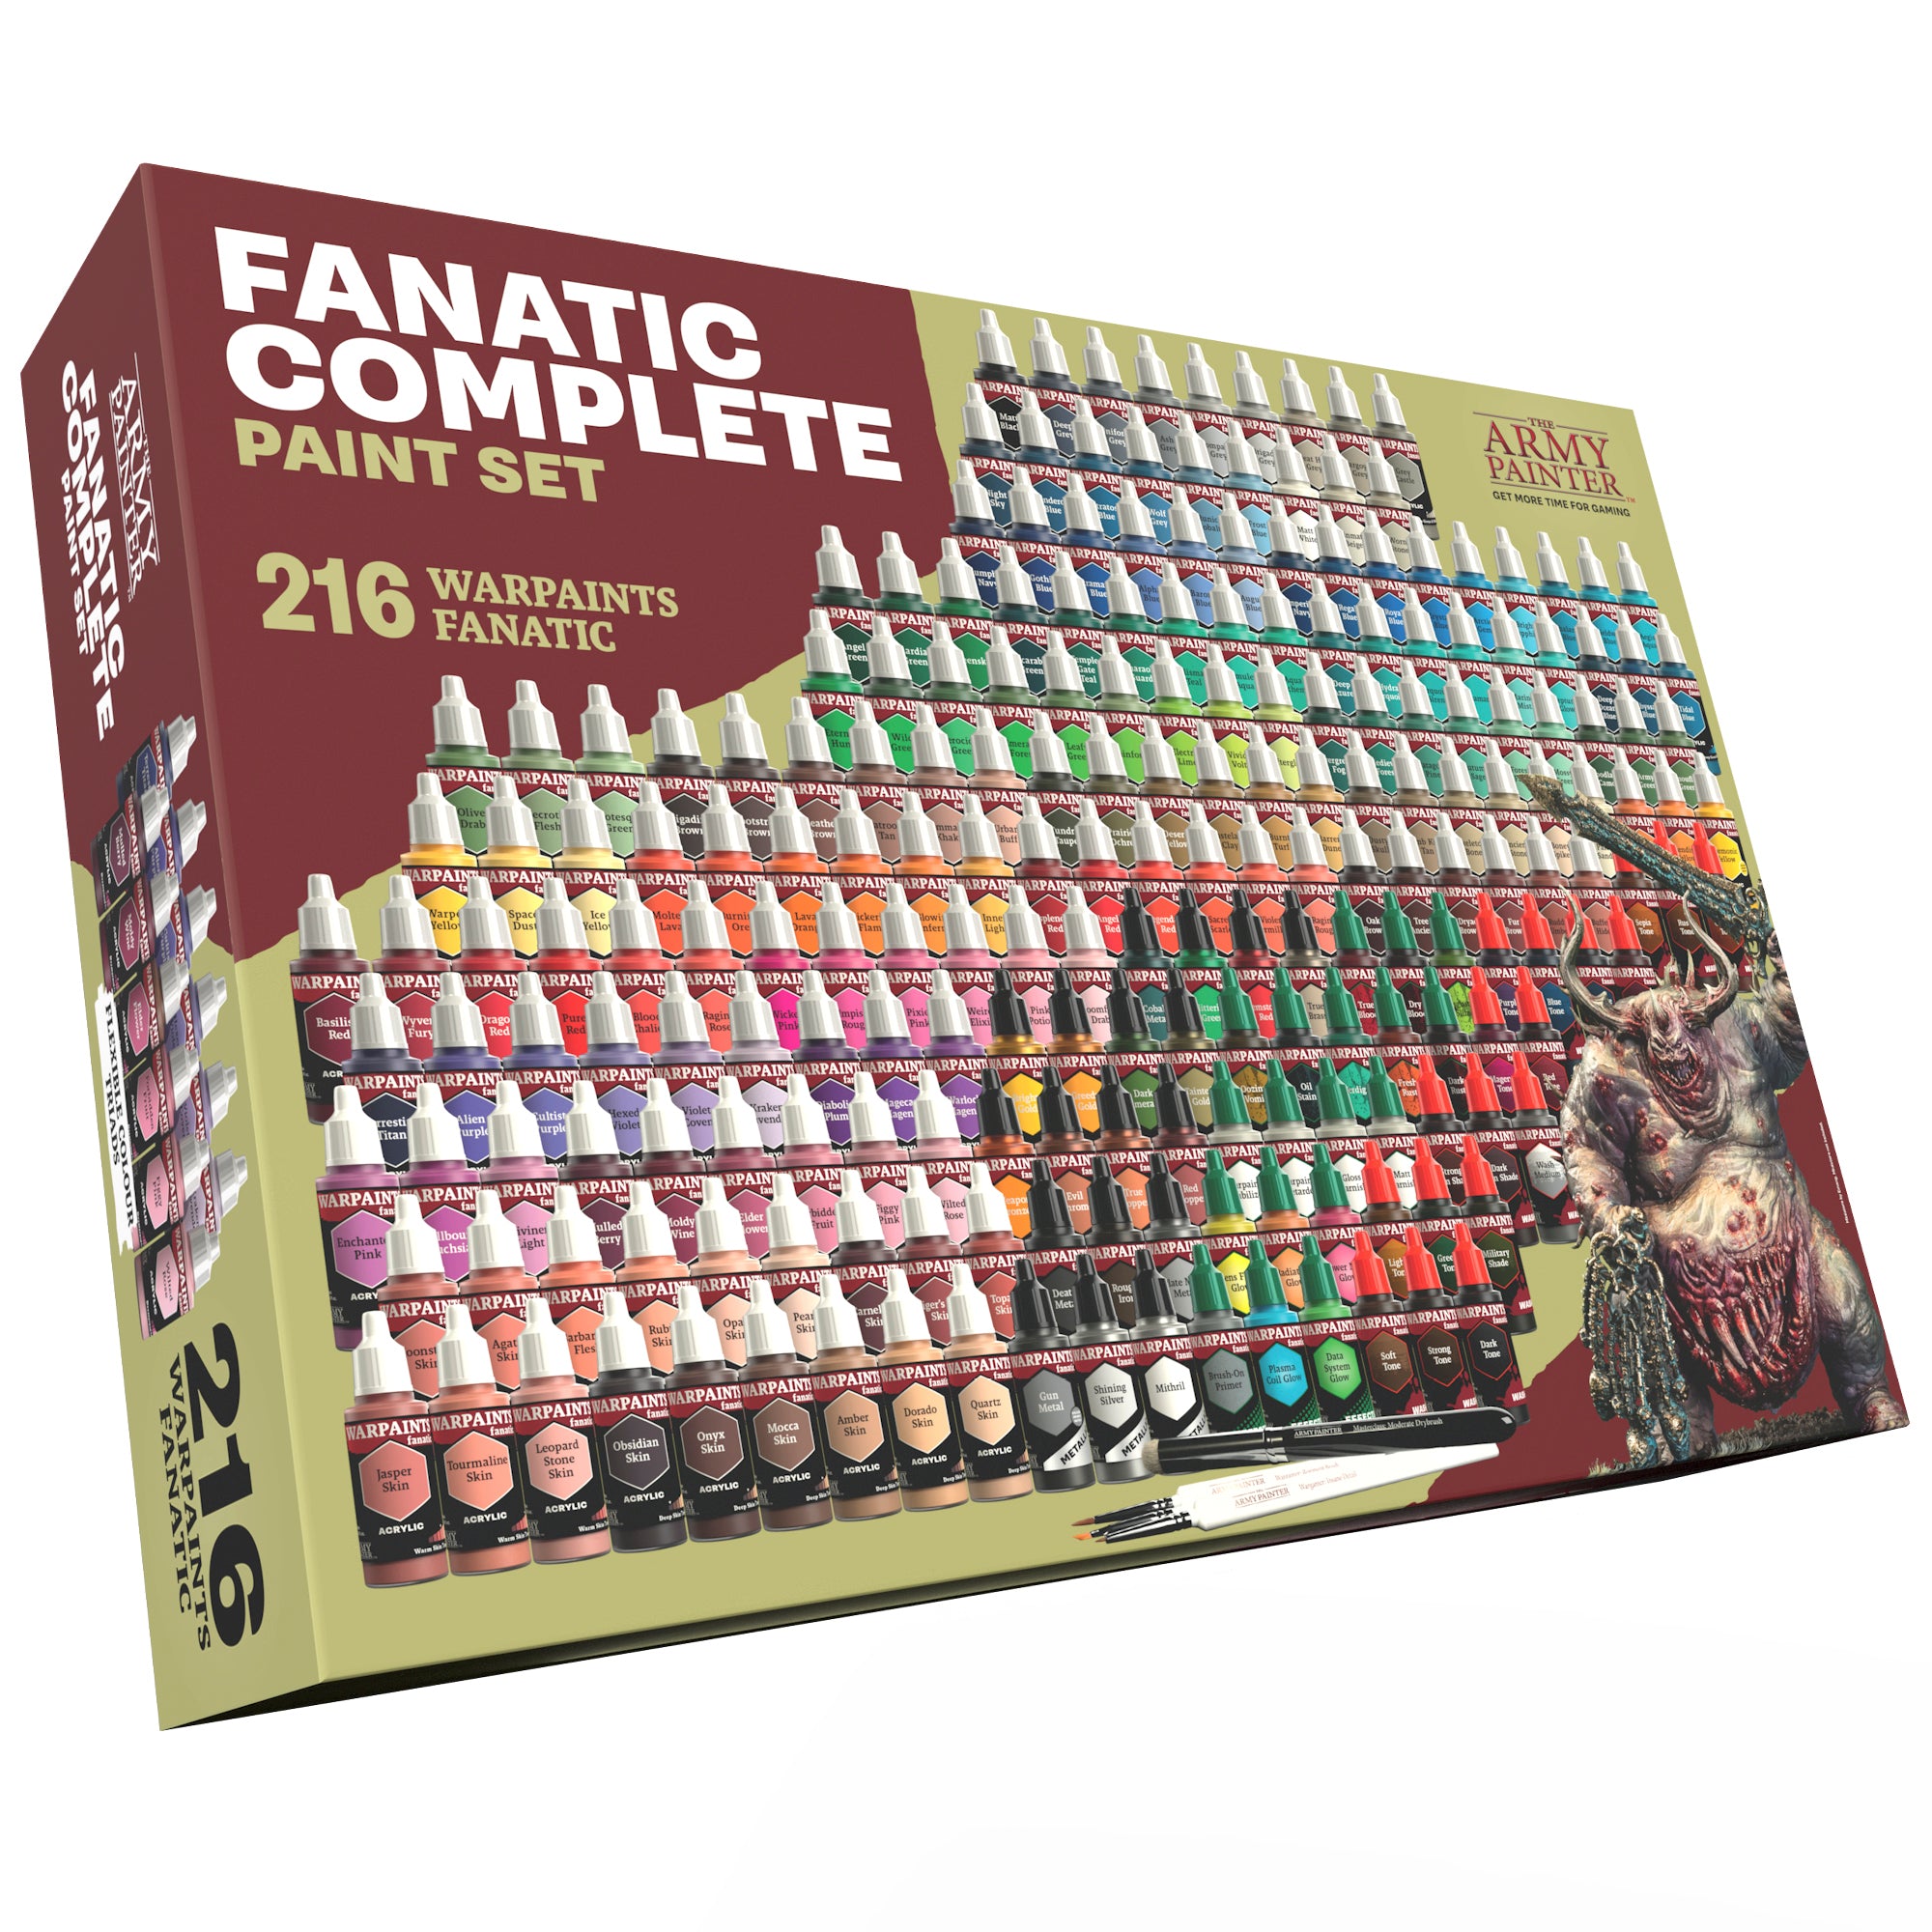 PREORDER - The Army Painter Warpaints Fanatic: Mega Paint Set (WP8067) –  Gnomish Bazaar